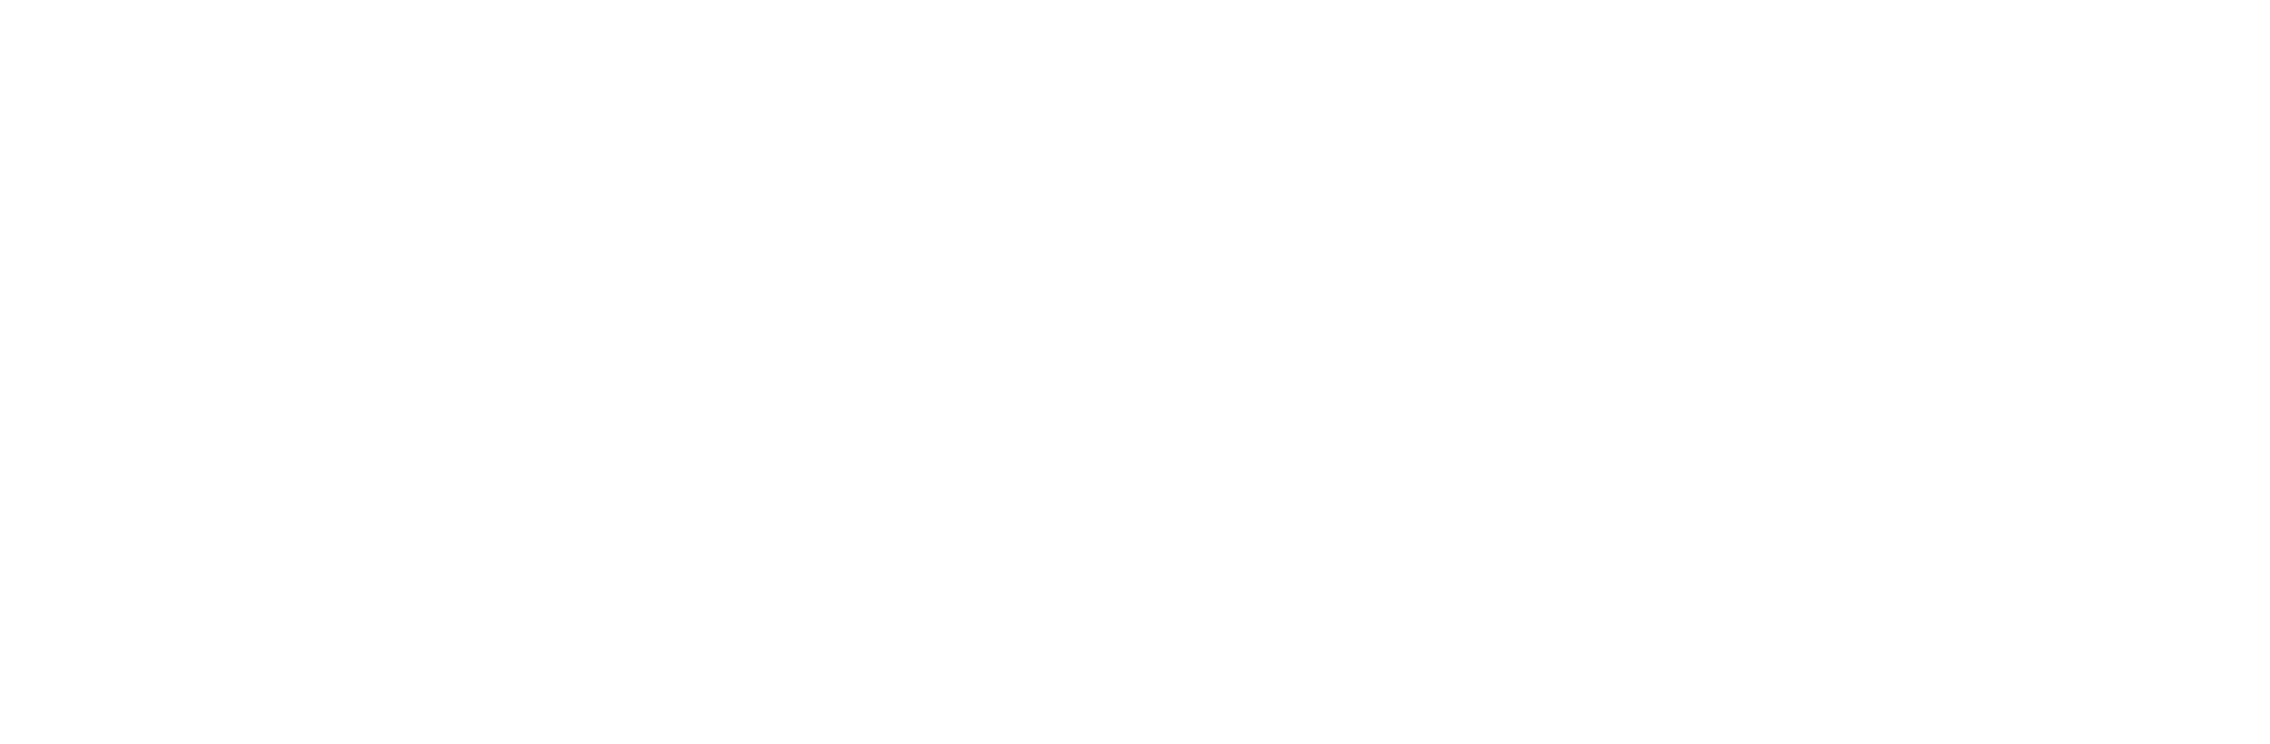 Kinder- und Jugendhospiz Leuchtturm Logo weiß